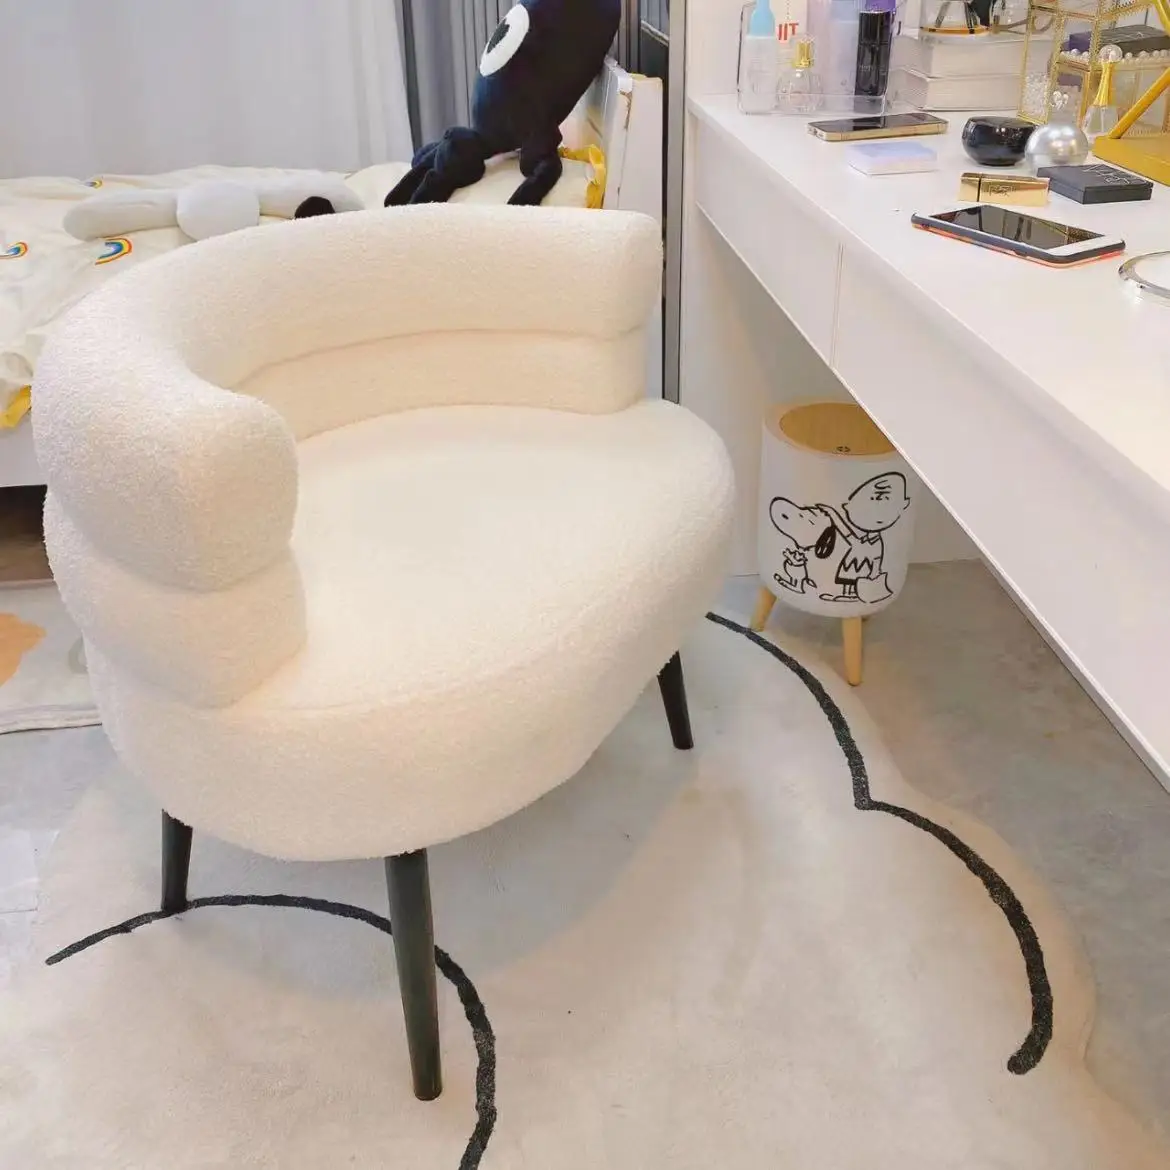 Sillas de terciopelo de cordero para sala de estar, sillón moderno, tumbonas, silla relajante para el hogar, tocador, silla de vestidor